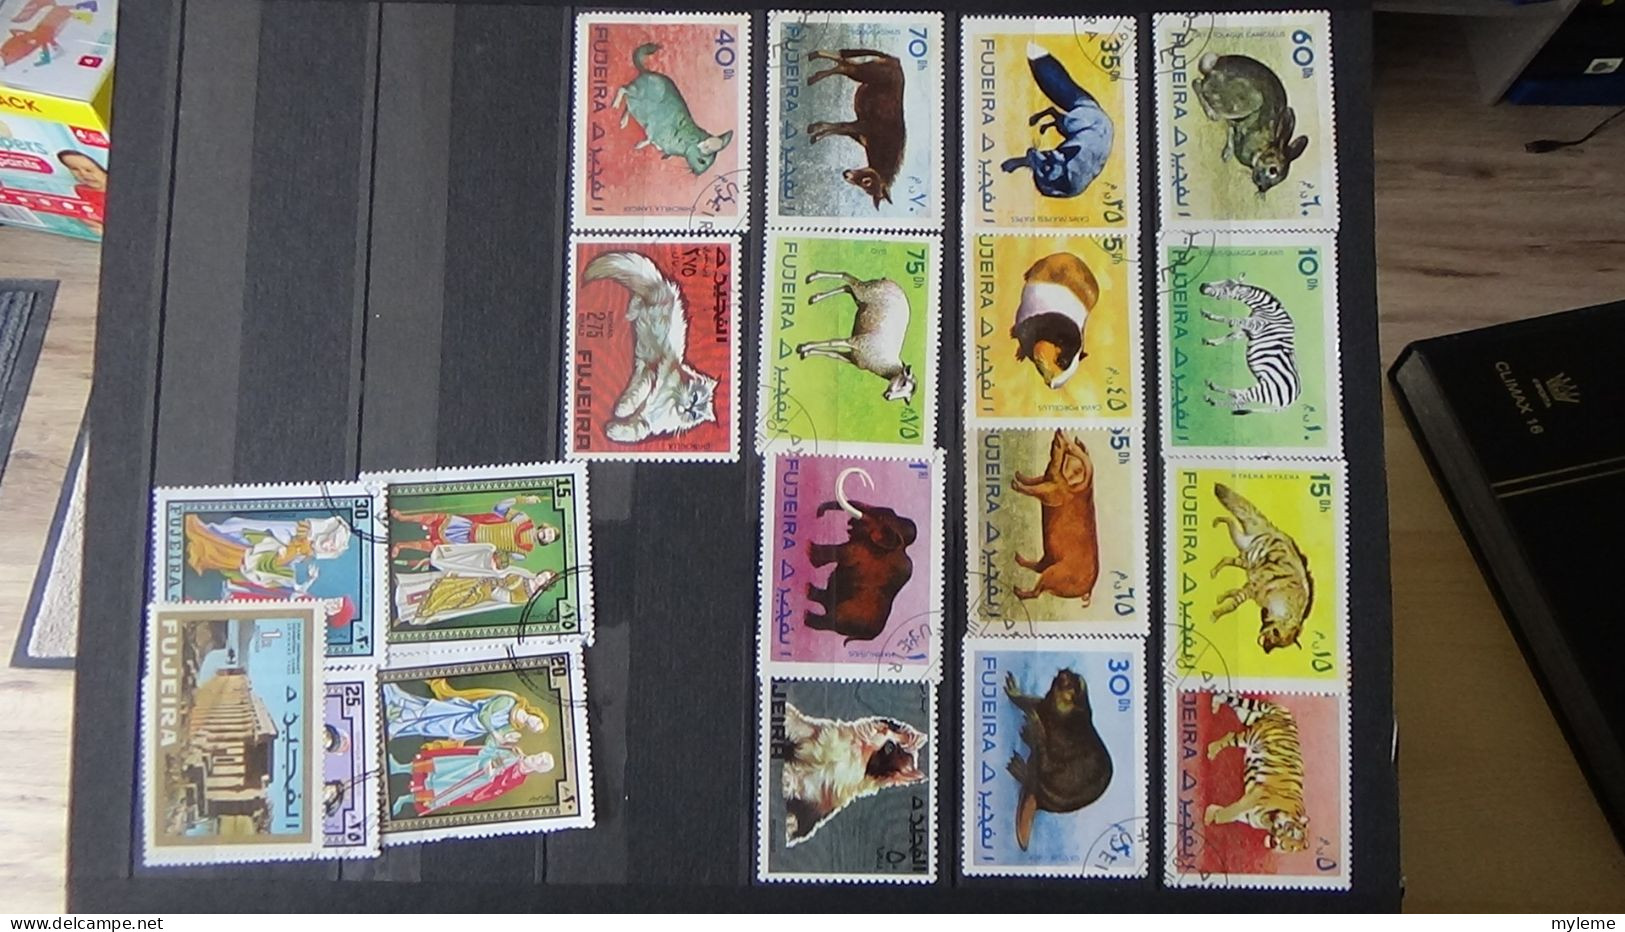 BF54 Bel ensemble de timbres de divers pays + plaquette de timbres **. A saisir !!!